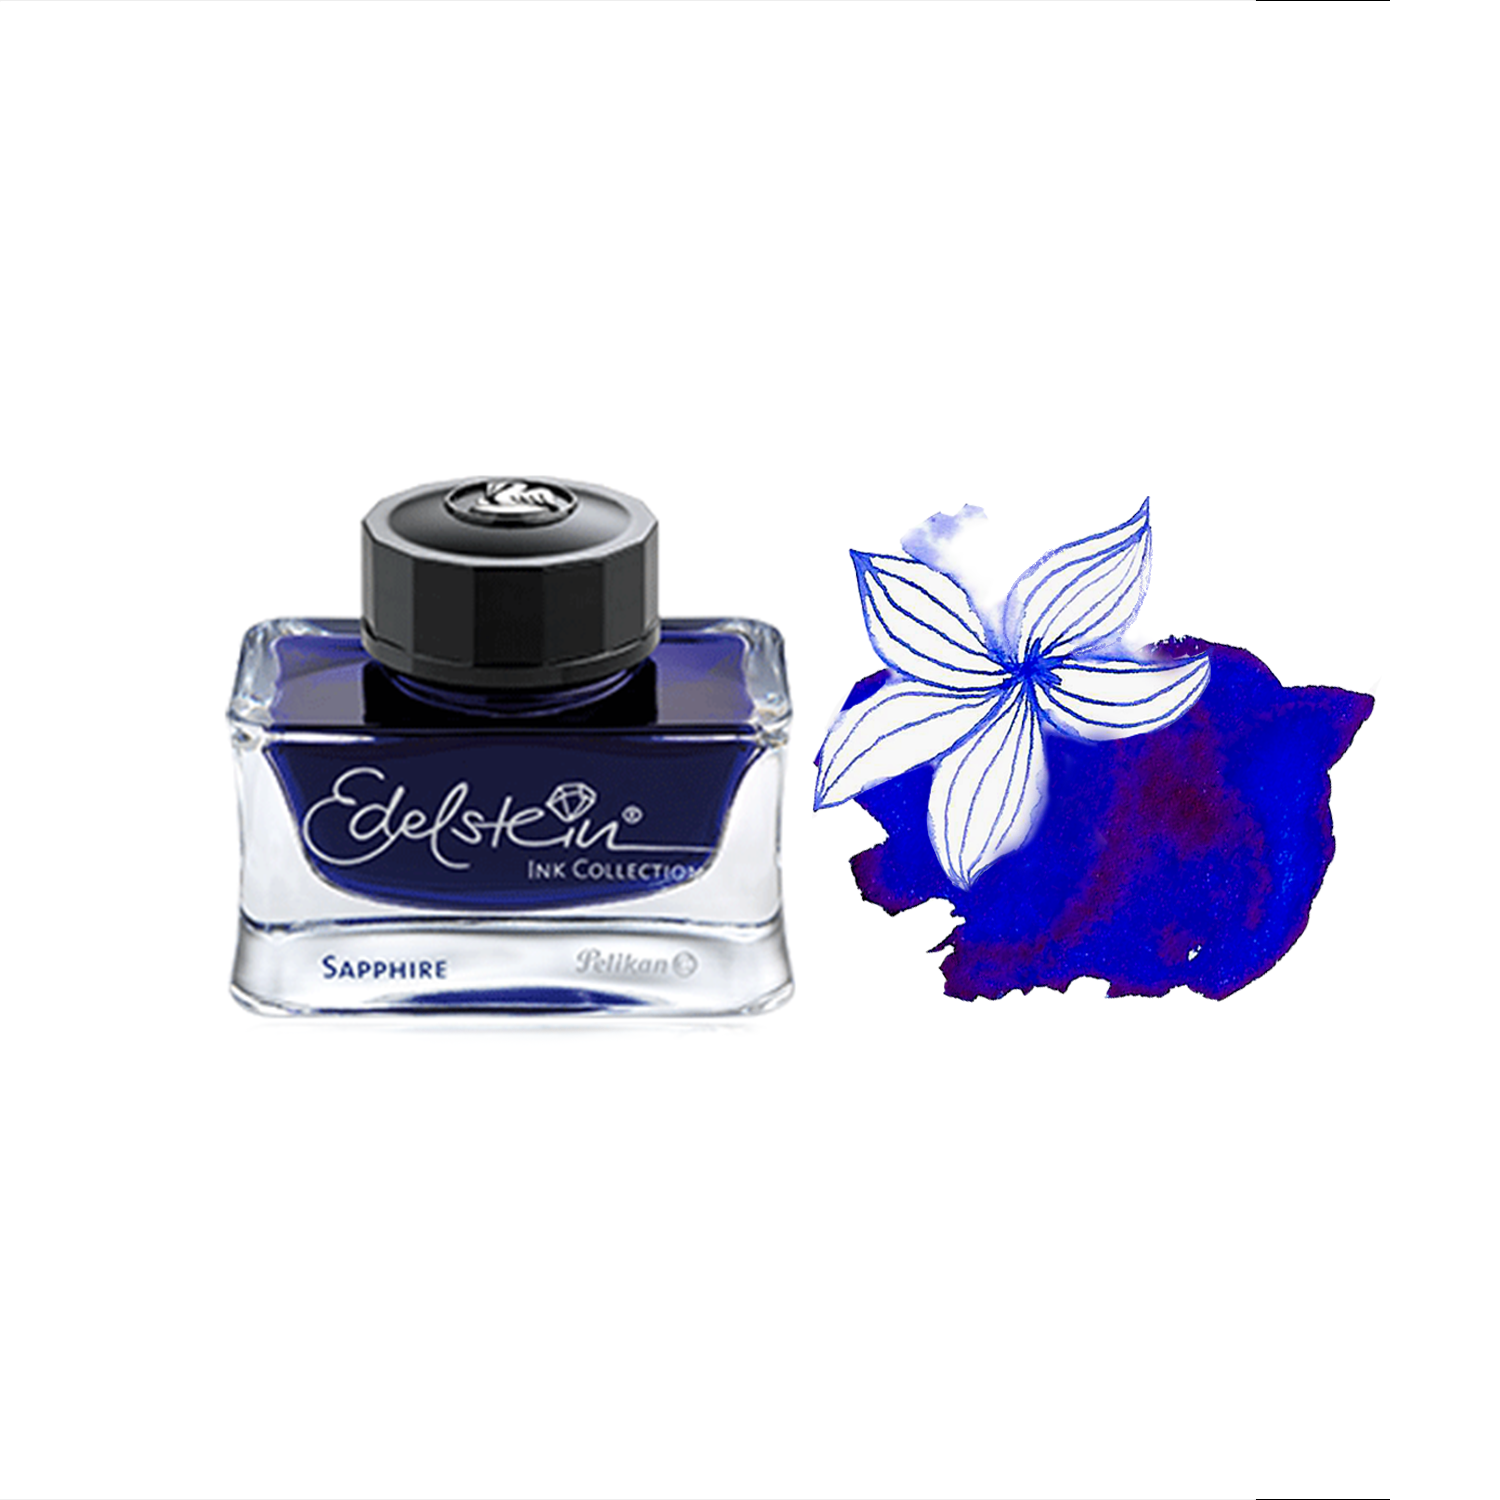 Edelstein Sapphire ink bottle * Pelikan